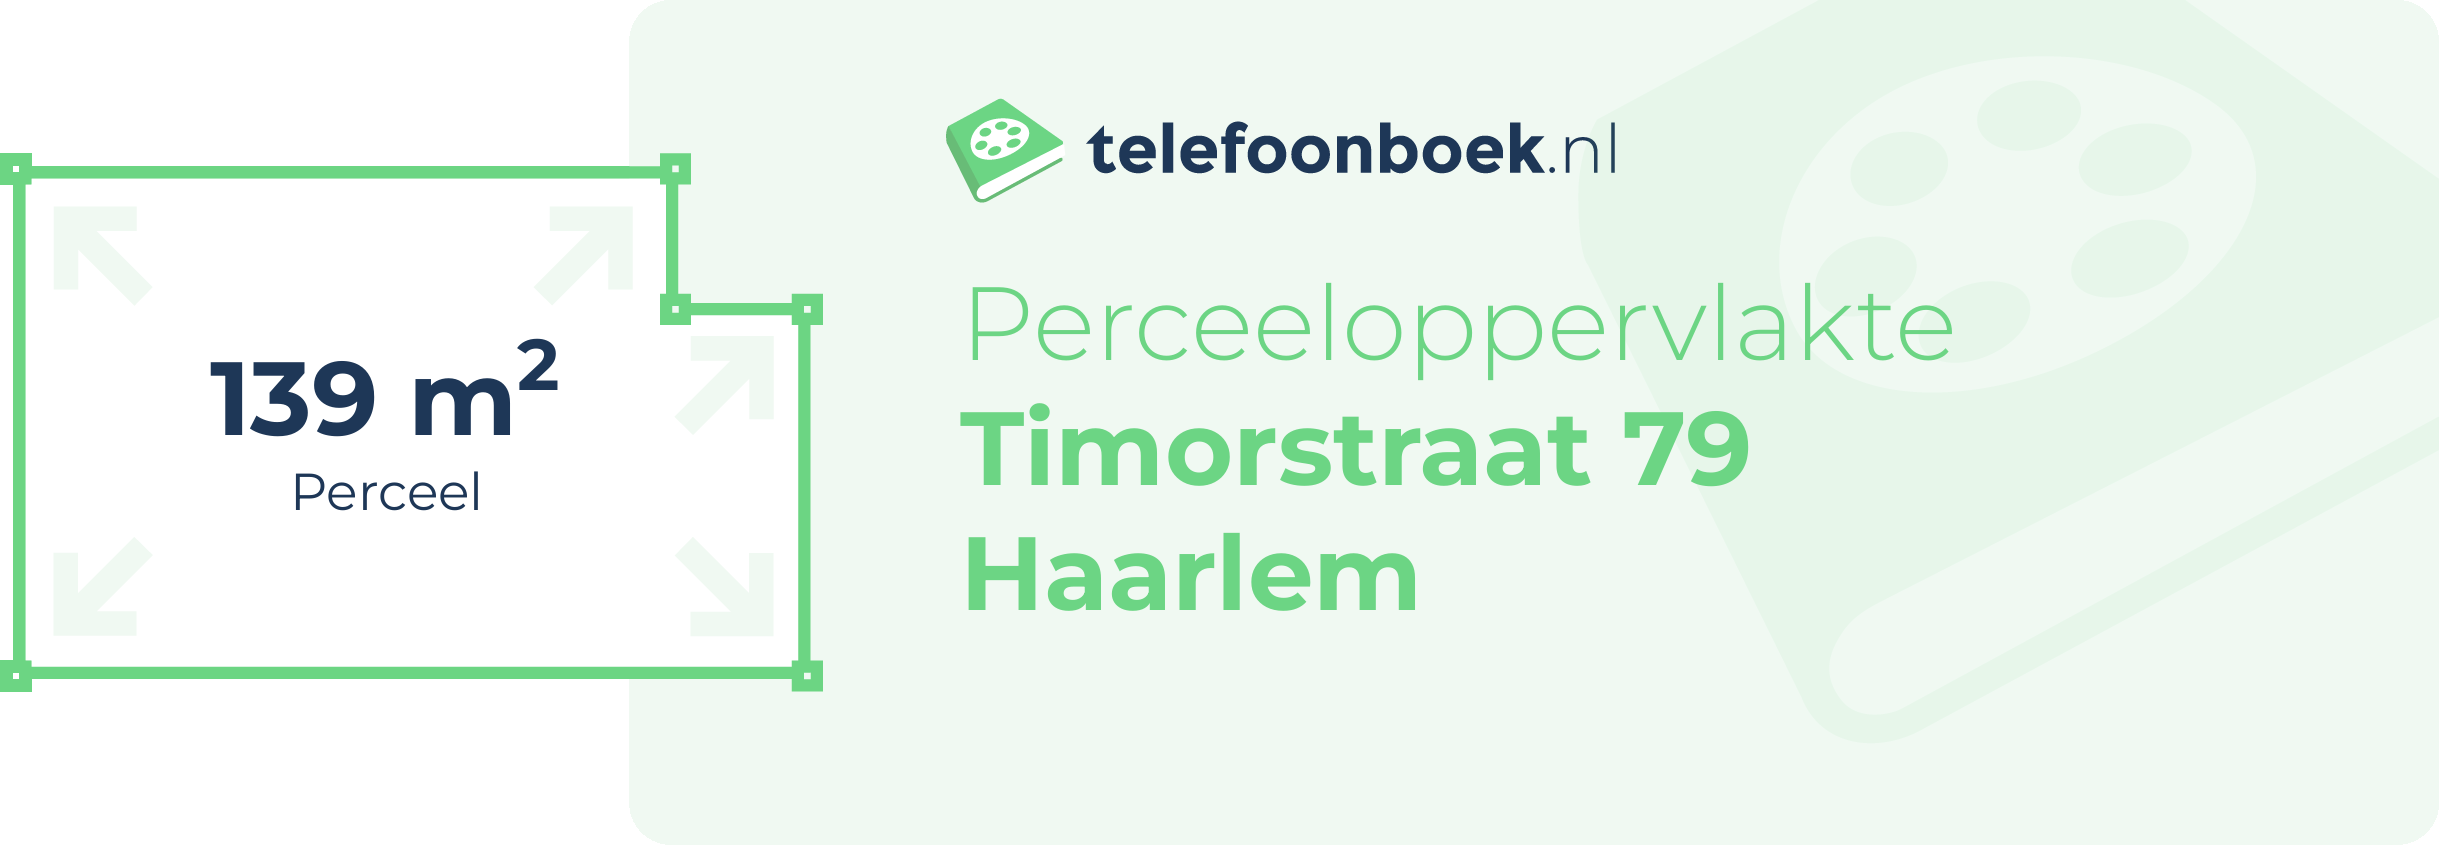 Perceeloppervlakte Timorstraat 79 Haarlem